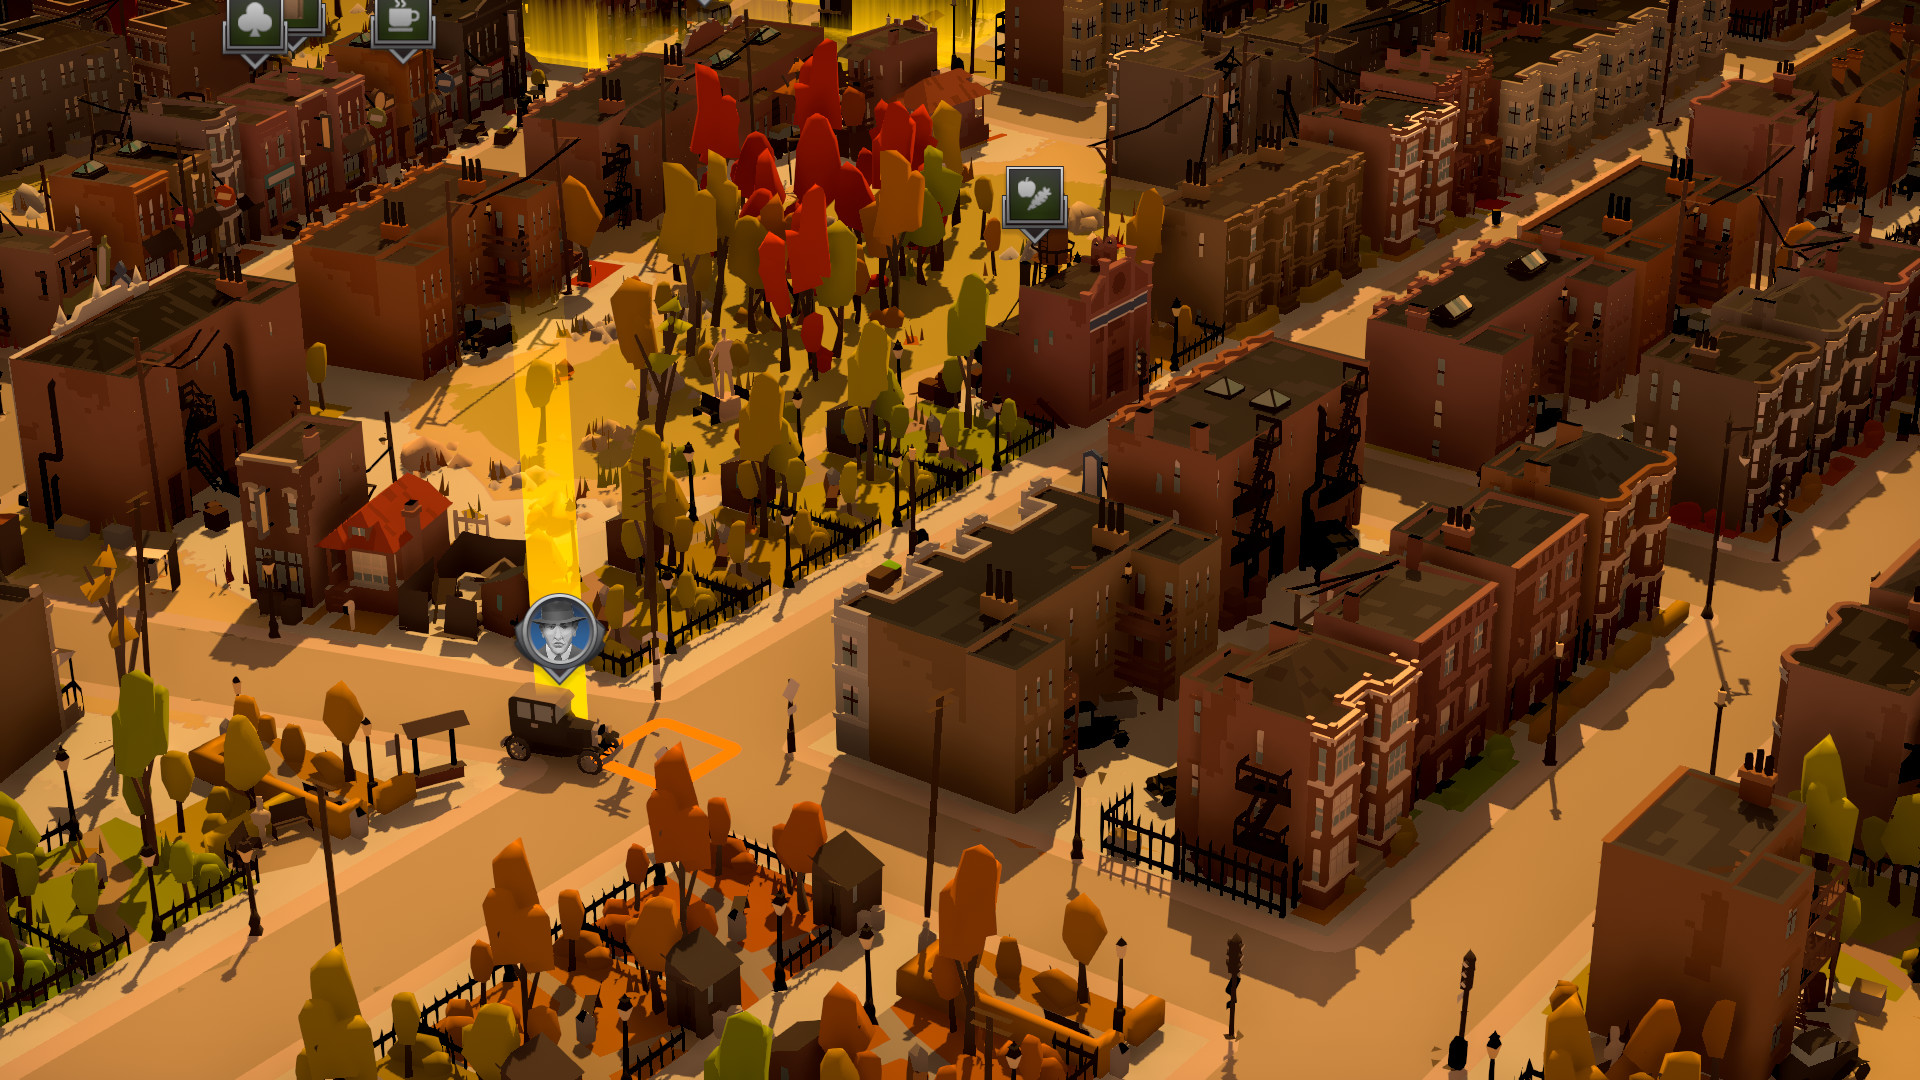 黑帮管理模拟游戏《黑帮之城》公布 登陆PC Steam